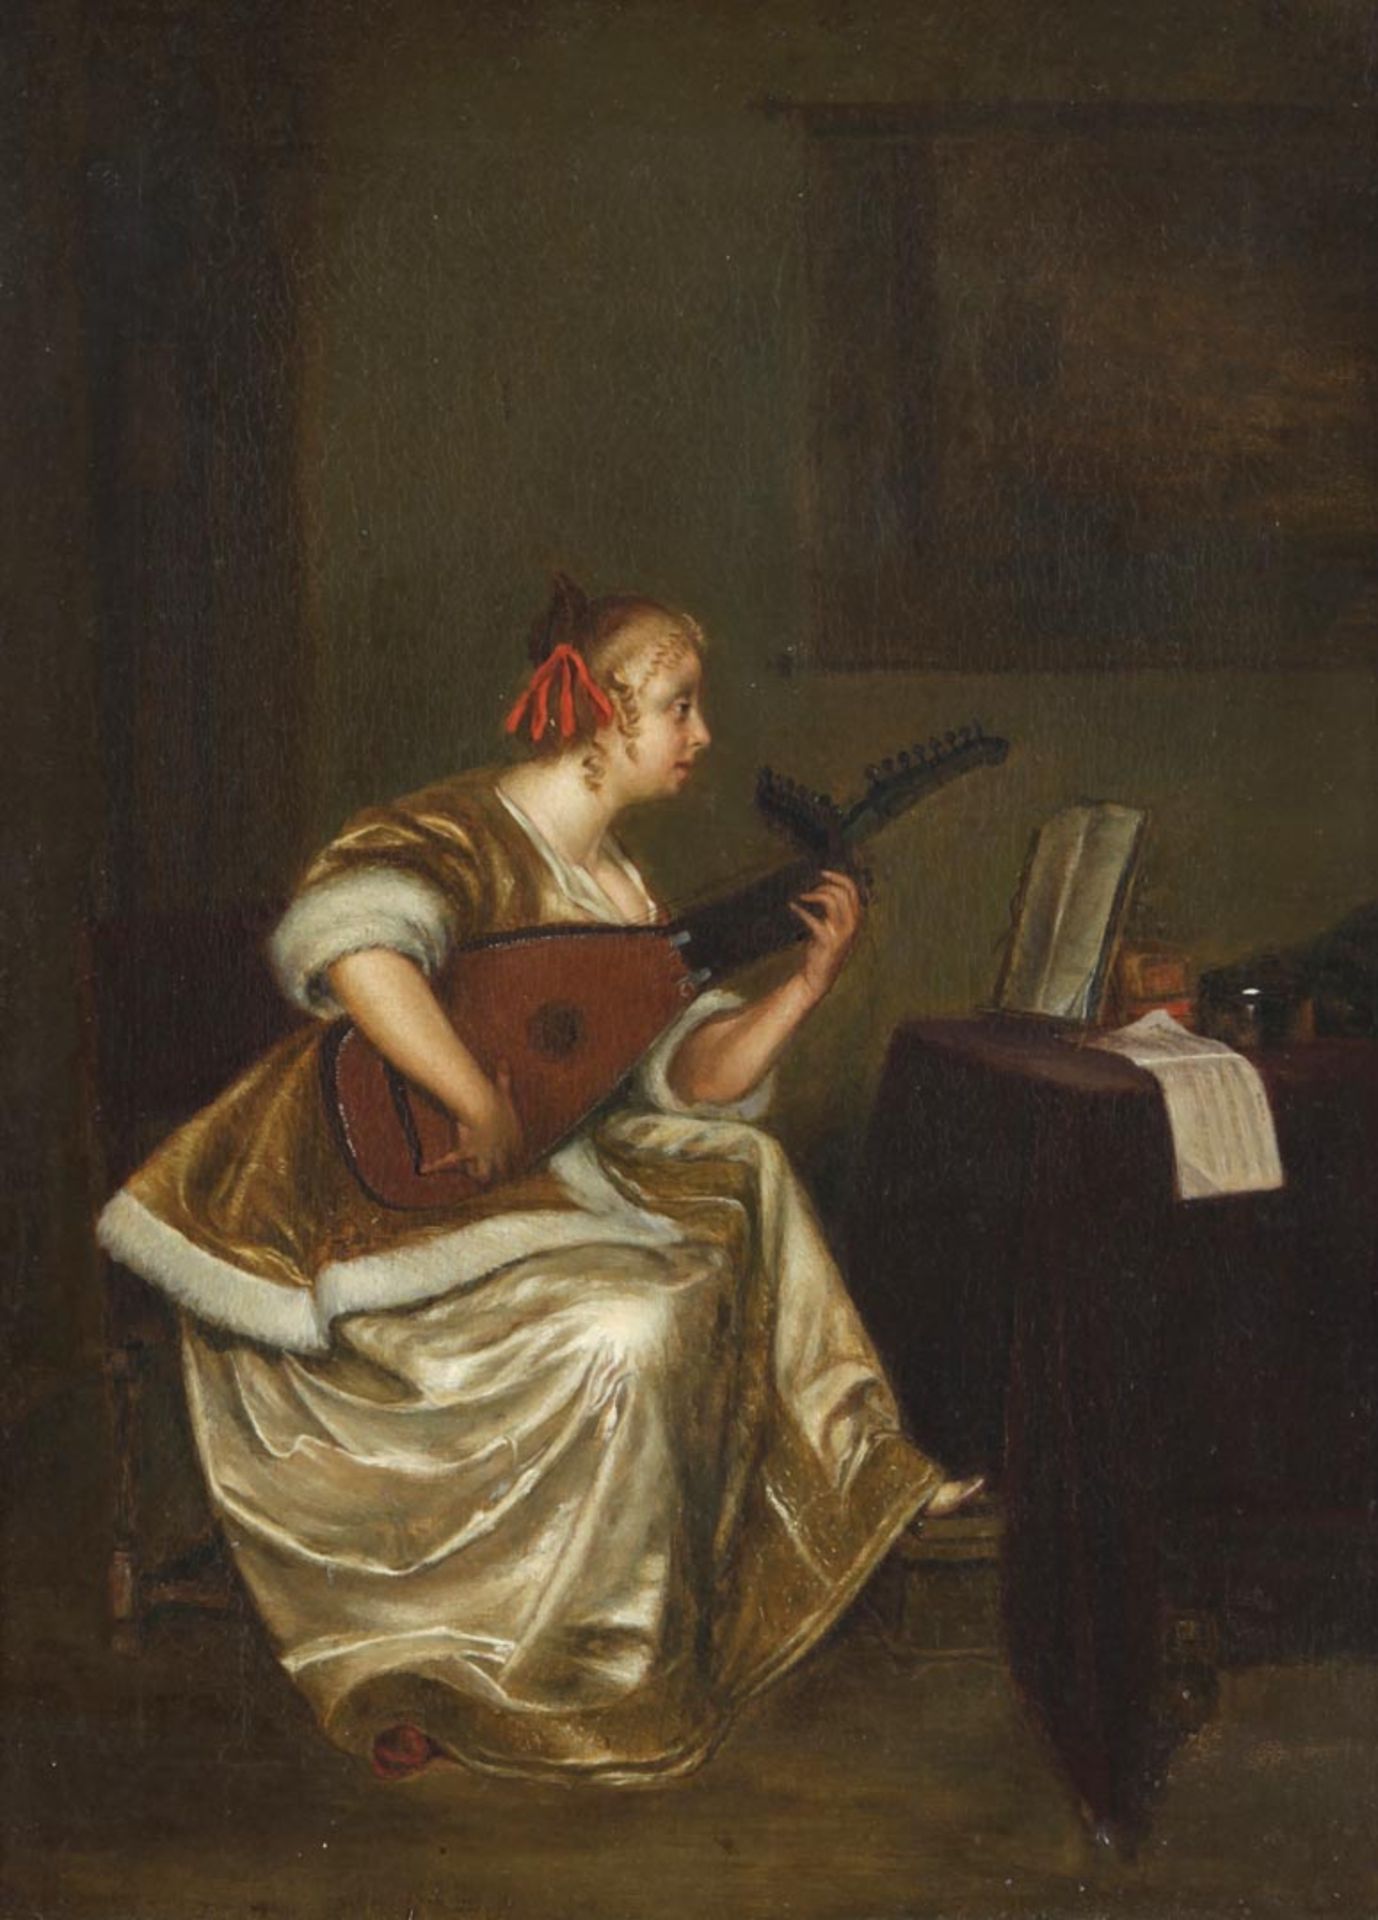 Die Lautenspielerin Ende 19.Jh. Kopie nach Gerhard ter Borch (1617-1681) "Die Lautenspielerin".-